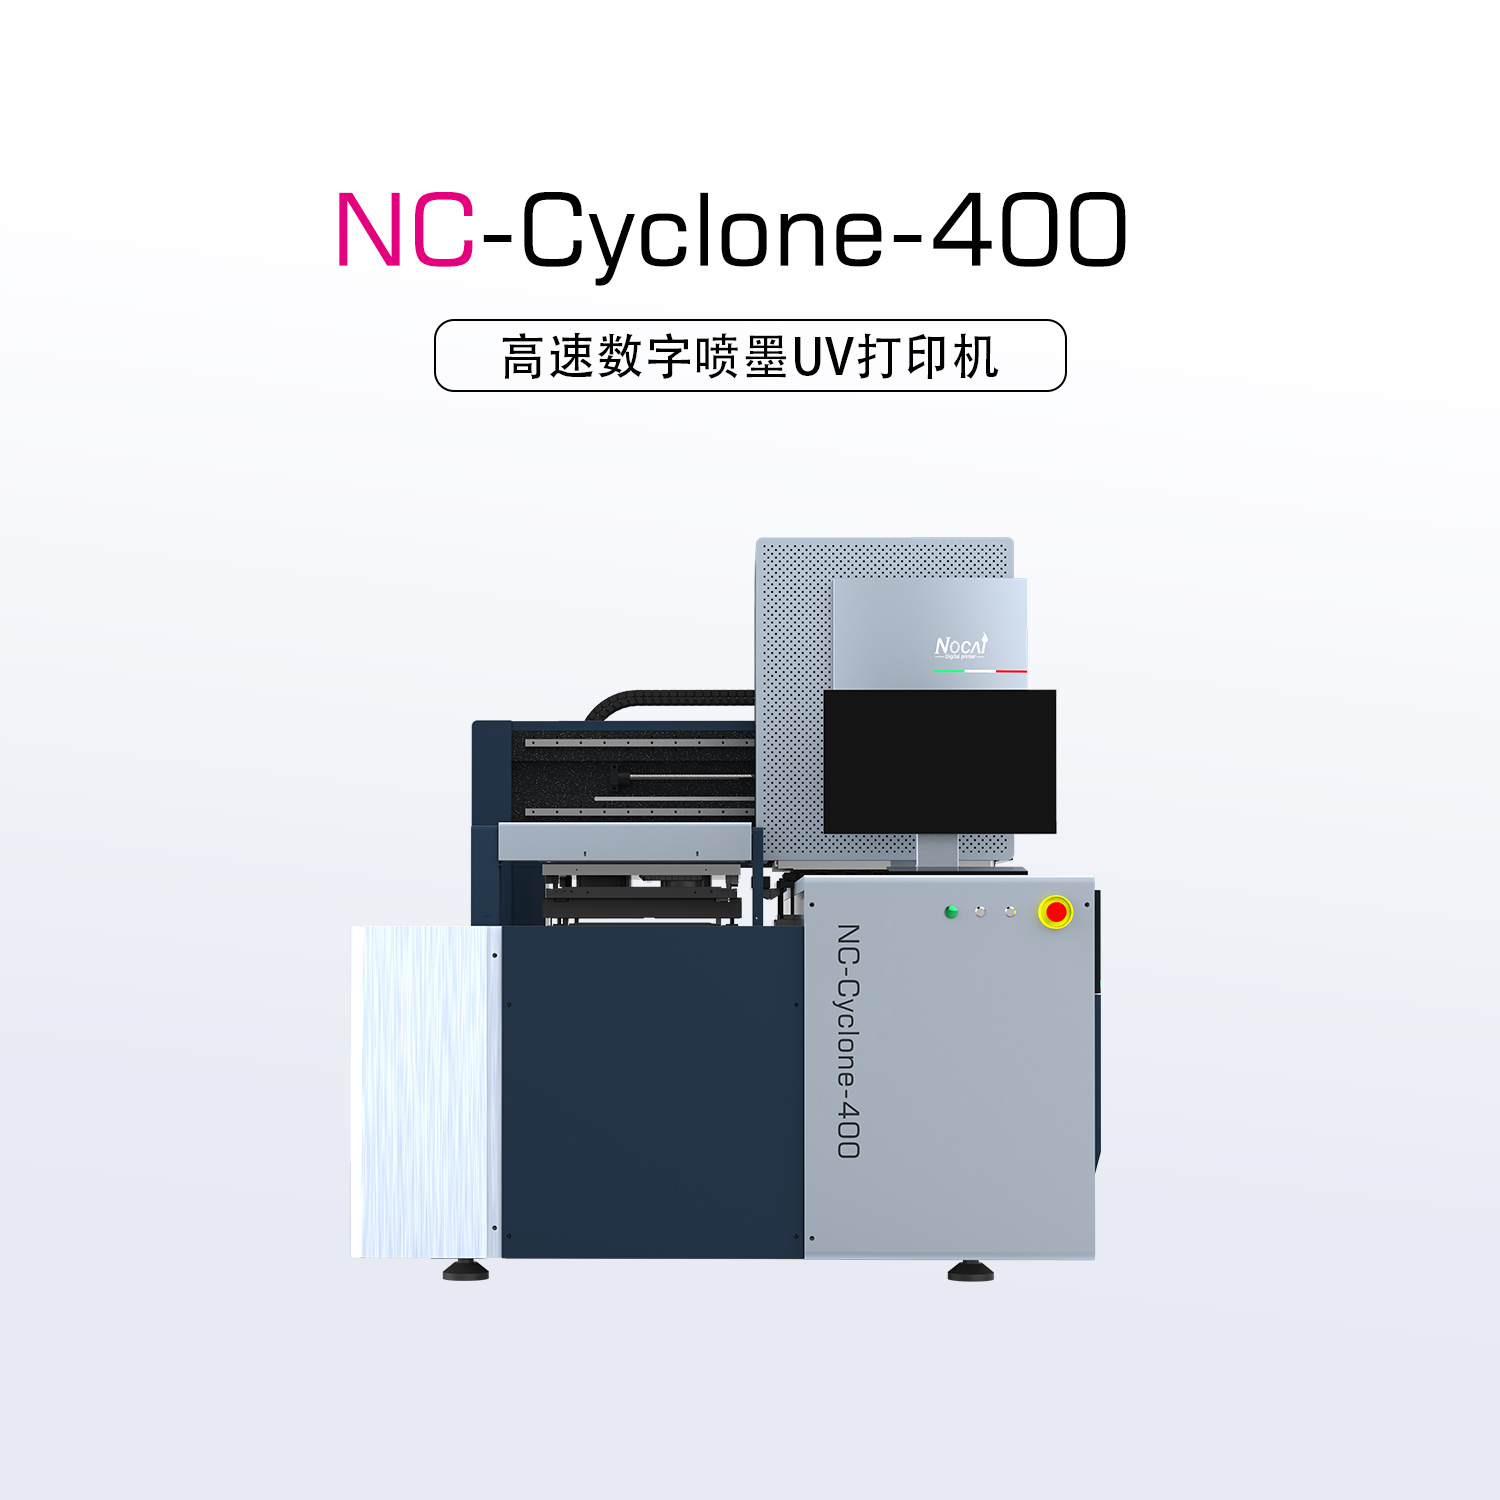 NC-Cyclone-400